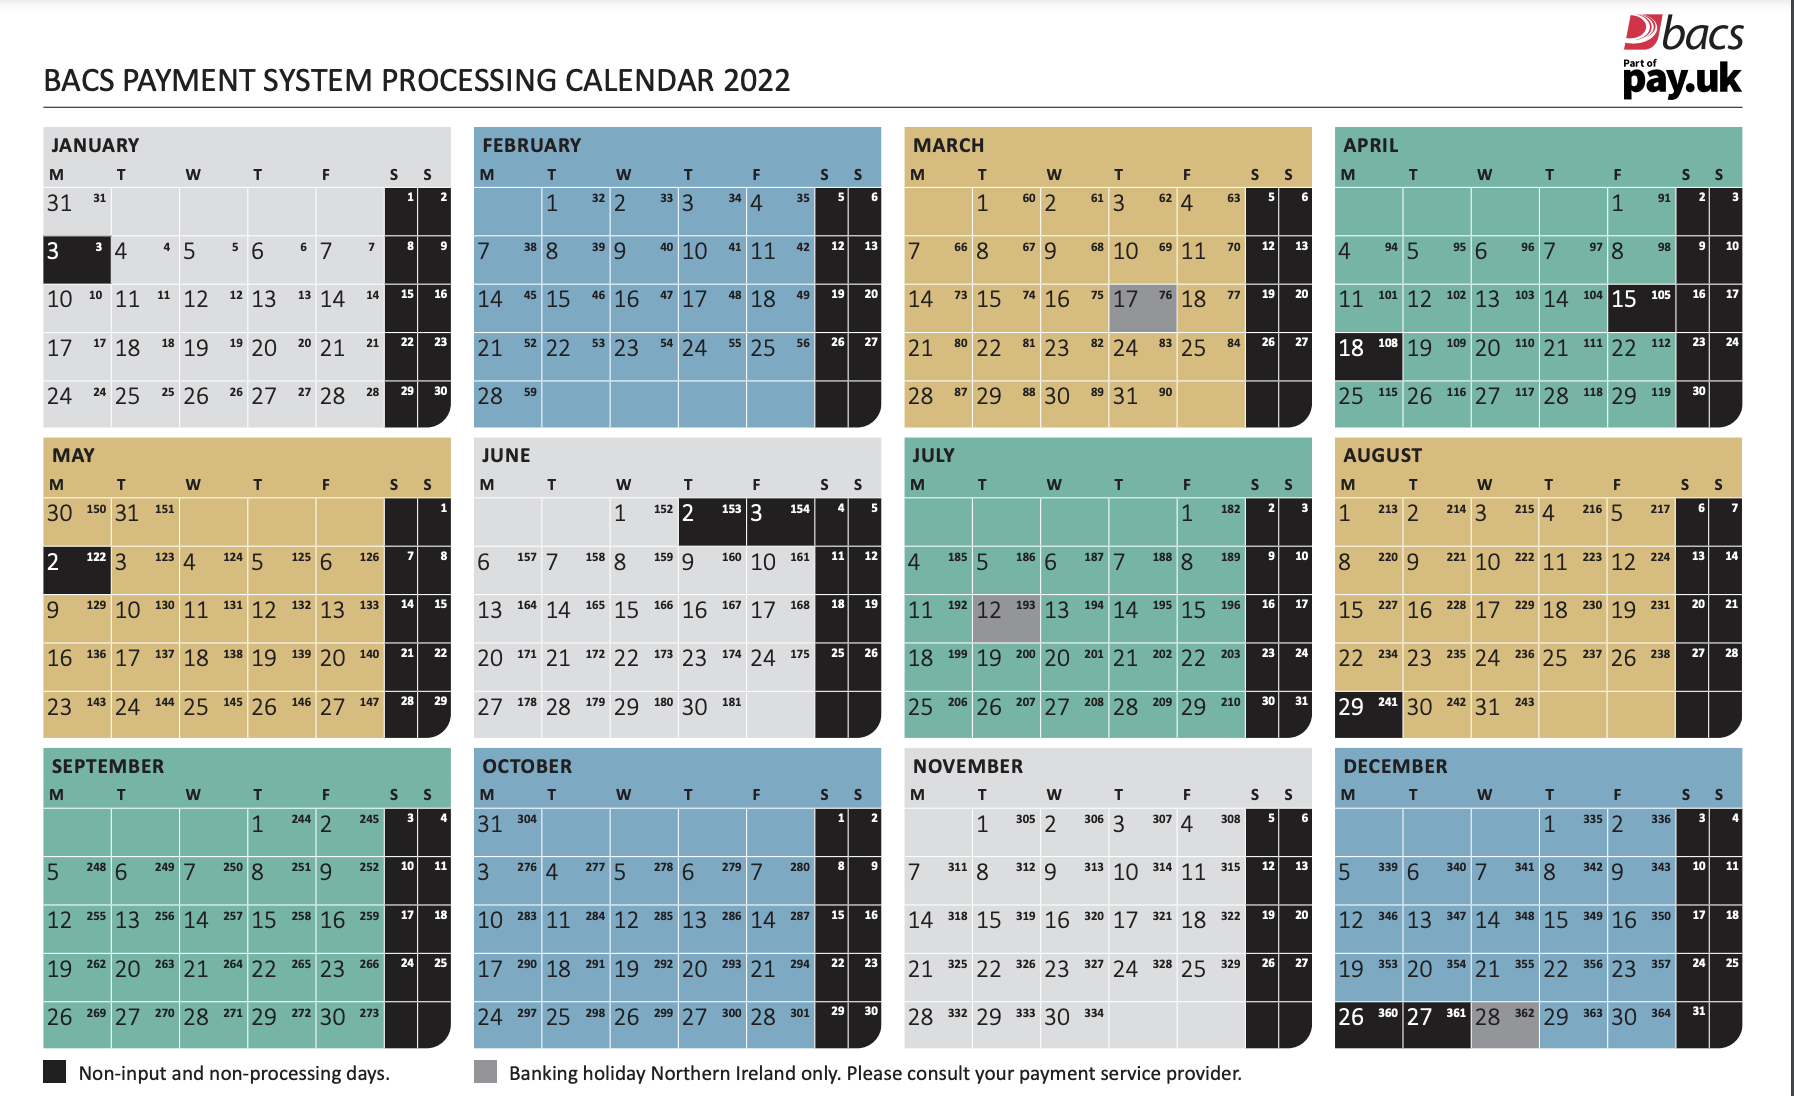 [en-gb] BACS processing calendar image 2022 